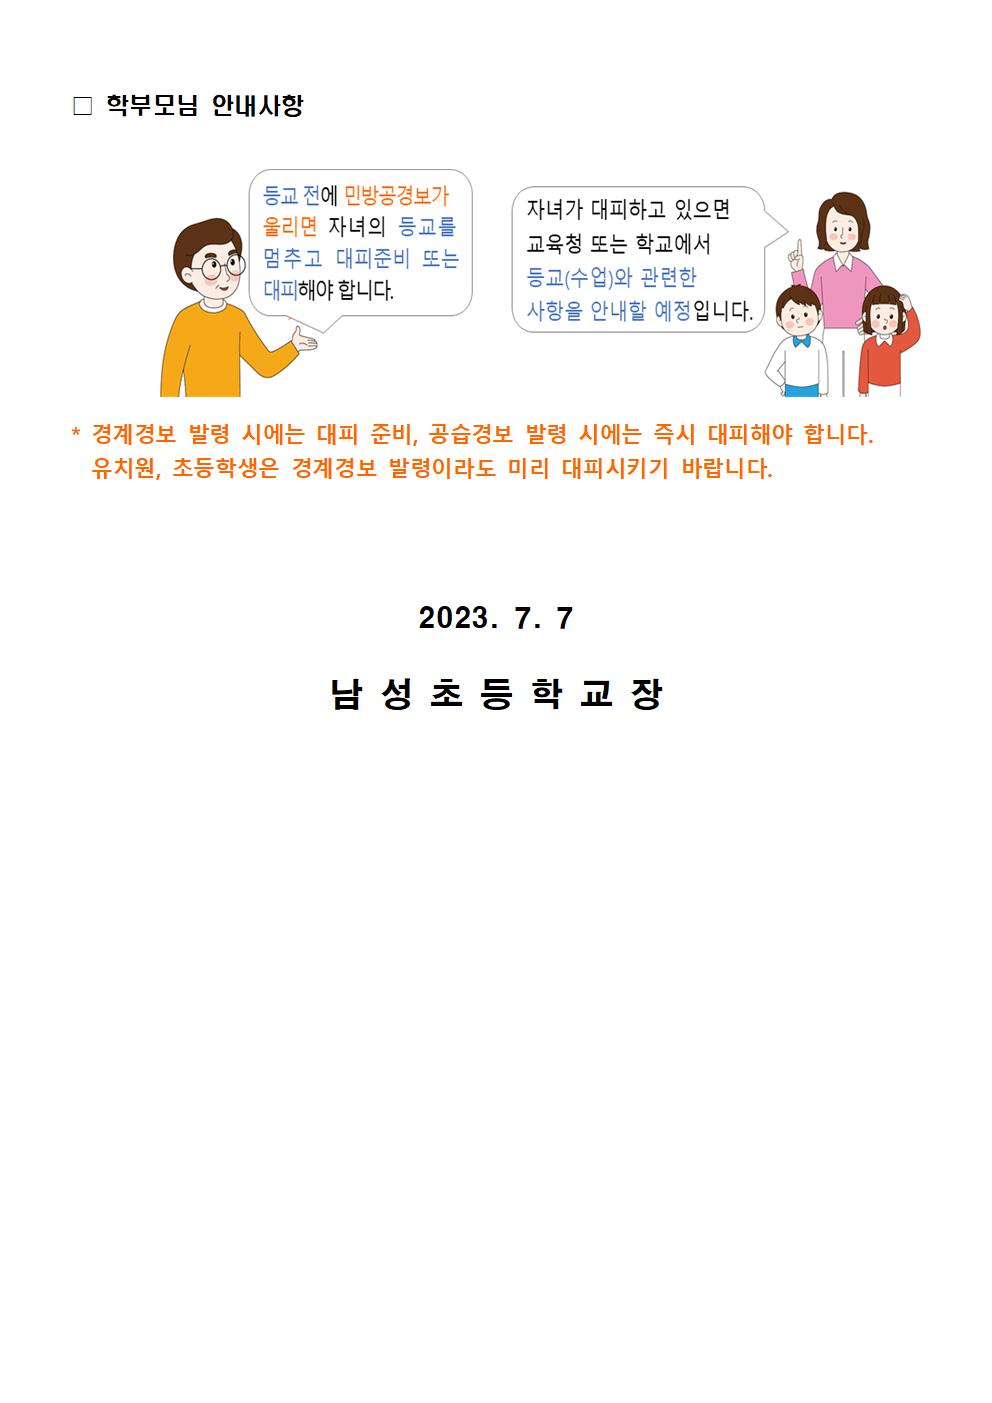 민방공 경보 발령 시 행동요령 가정통신문002